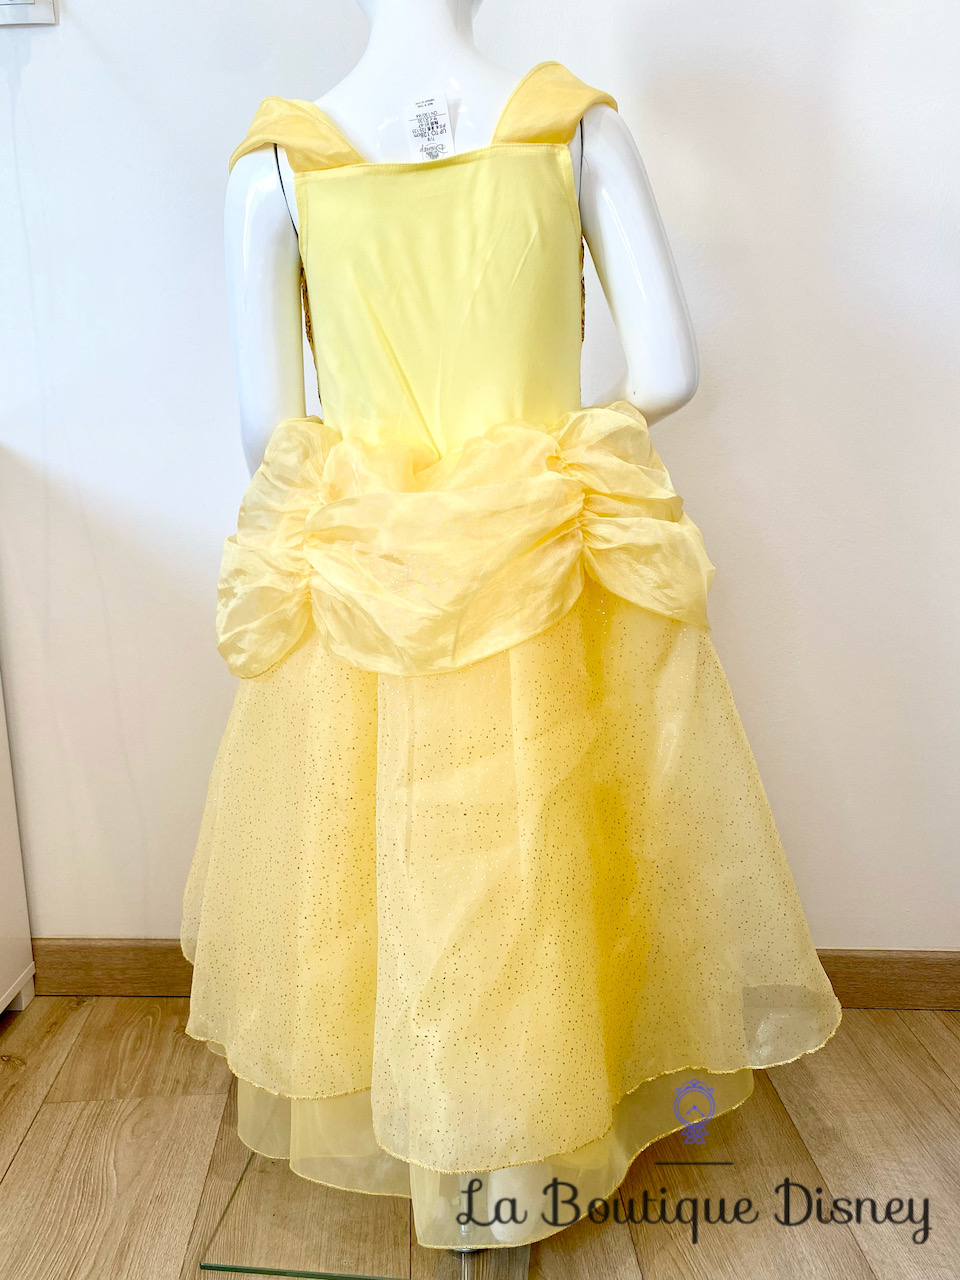 Déguisement Belle La belle et la bête Disneyland Paris Disney taille 6 ans  robe princesse jaune manches longues - Déguisements/Taille 4 à 6 ans - La  Boutique Disney